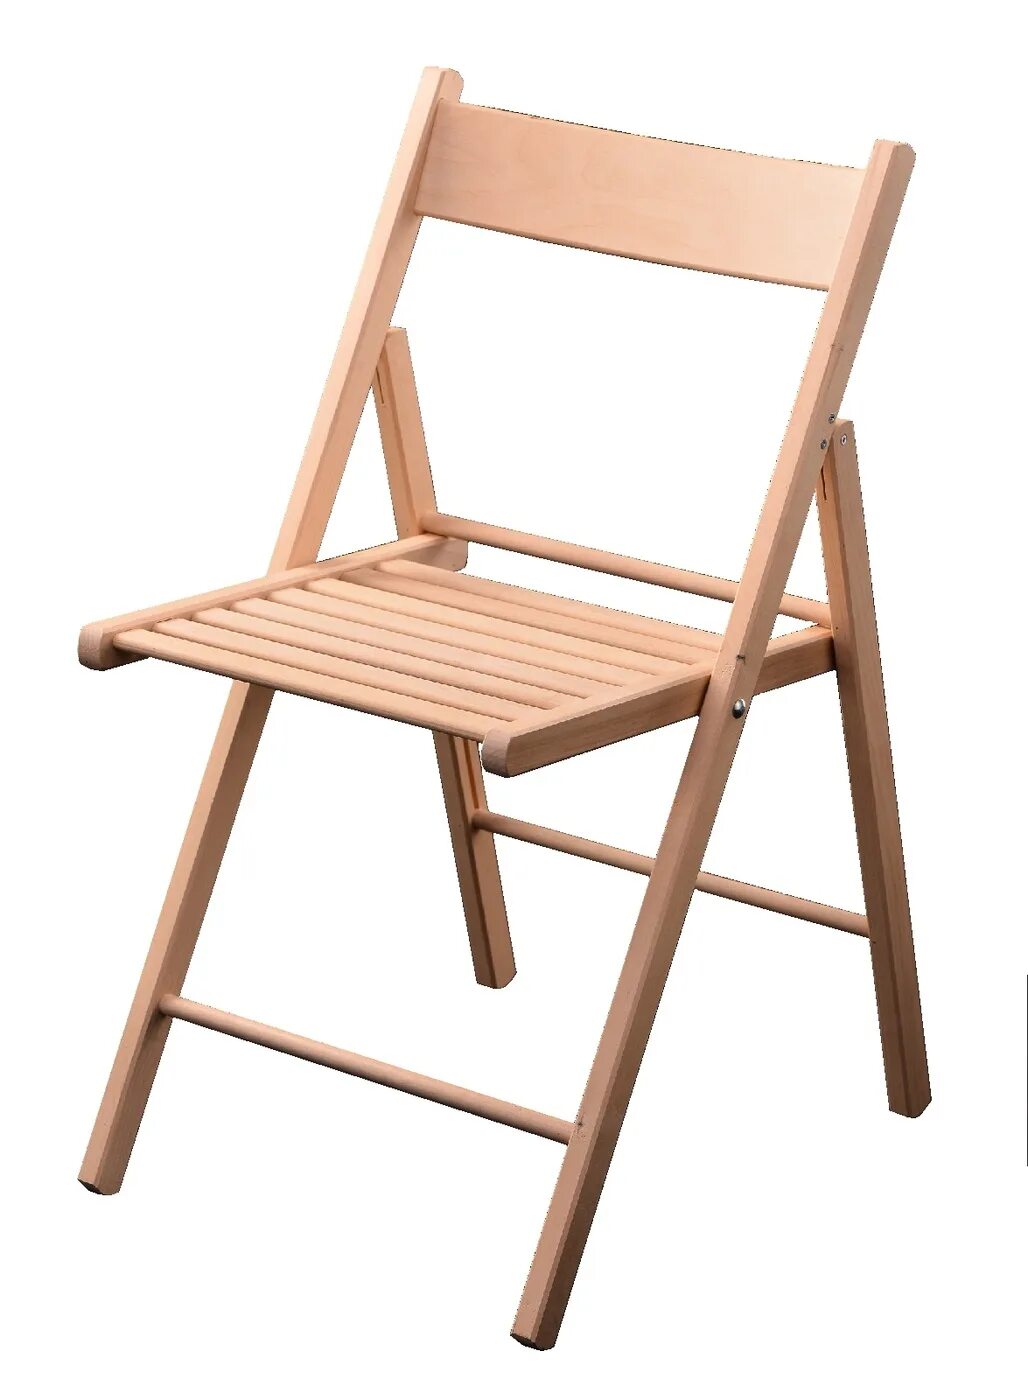 Стул «КОВЧЕГЪ» складной деревянный. Икеа стулья складные деревянные со спинкой. Стул складной ikea. Стул сс01 деревянный складной.